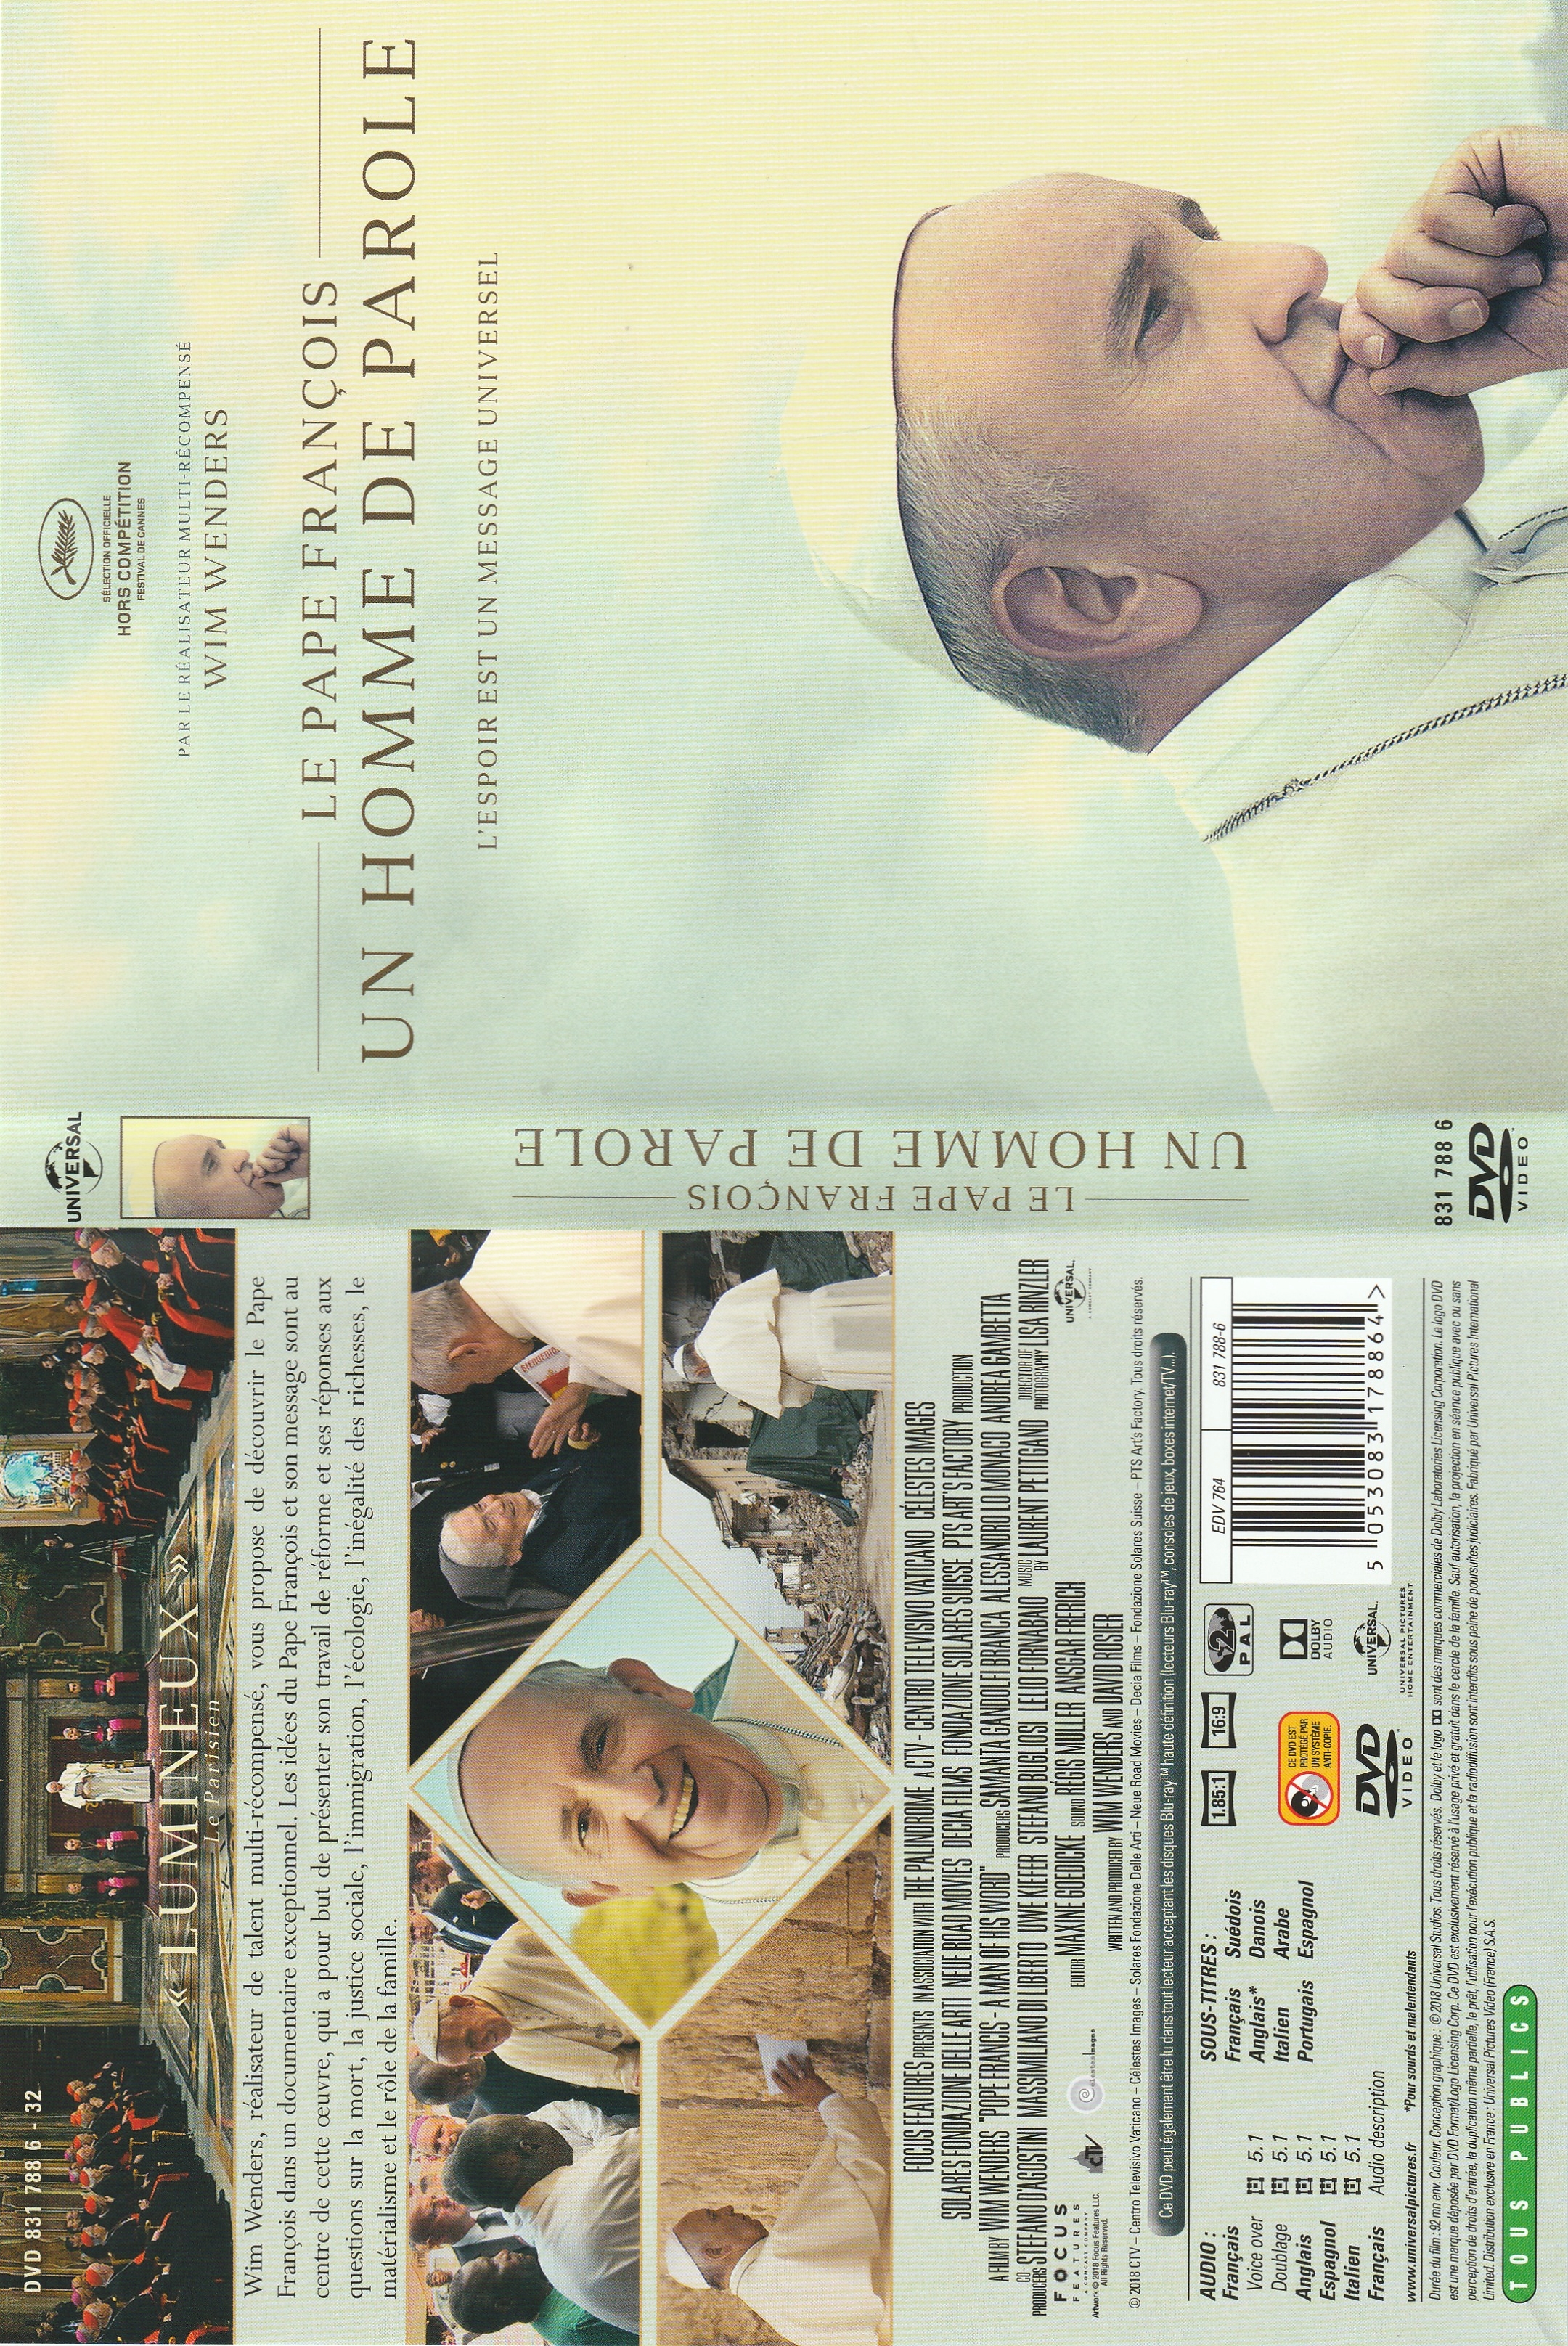 Jaquette DVD Le pape Francois - Un homme de parole